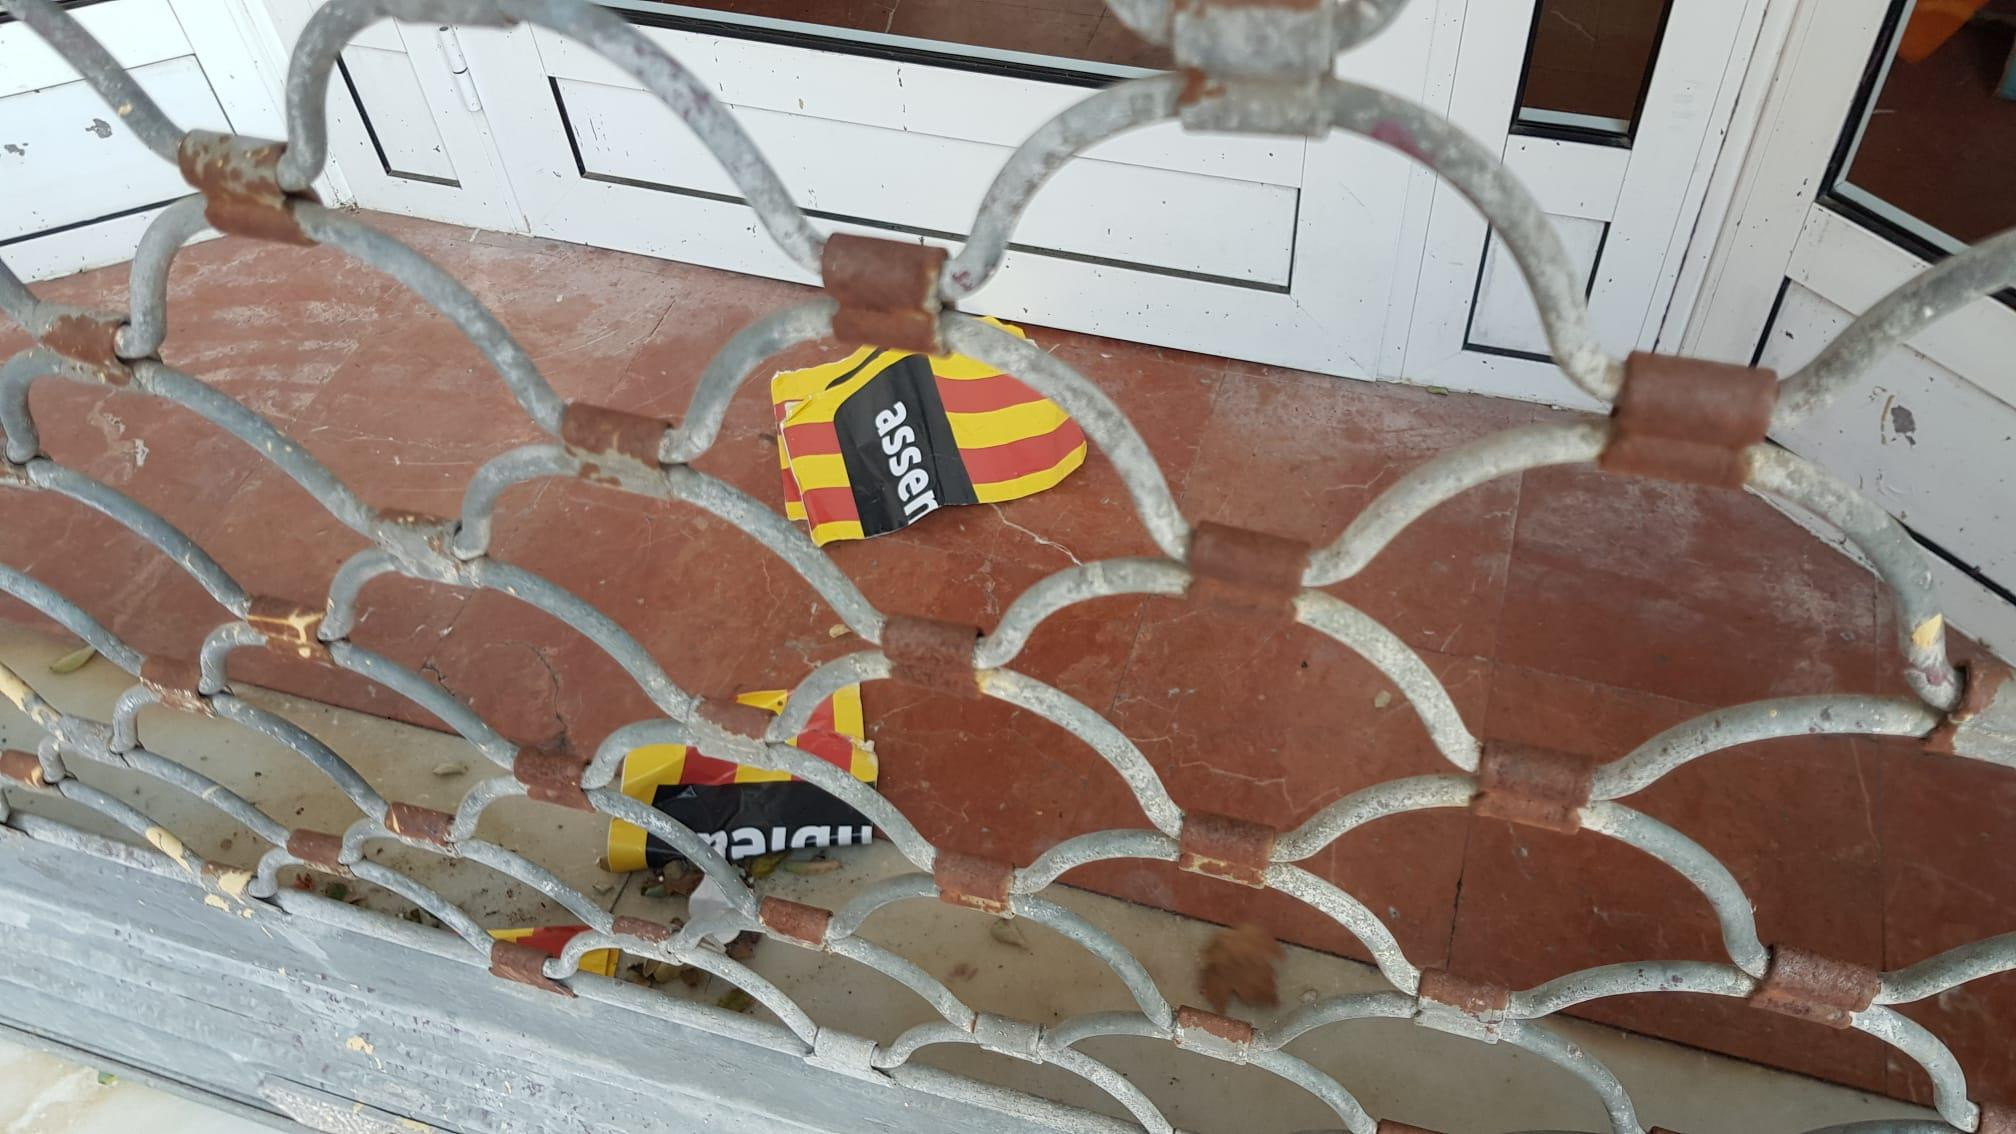 Puerta de acceso a la sede de Ciudadanos en L'Hospitalet (Barcelona) tras el ataque de este lunes / CIUDADANOS